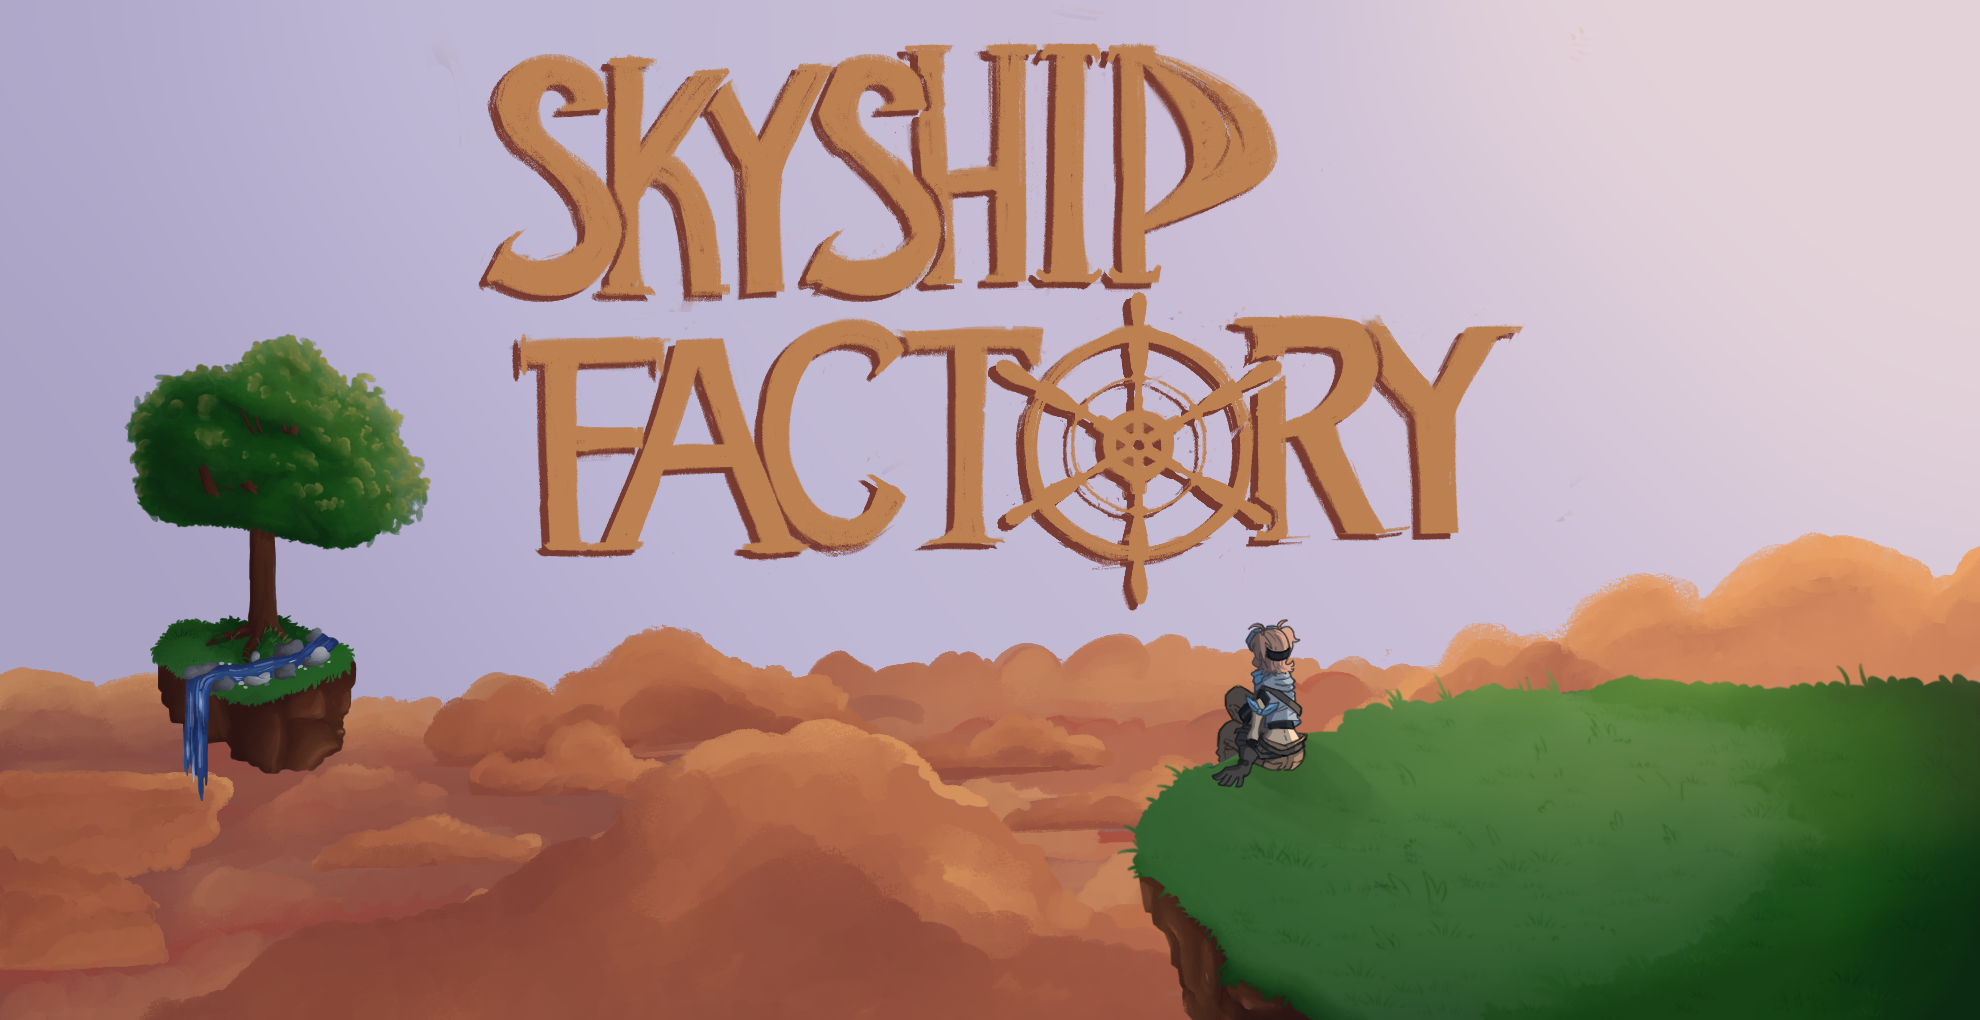 Skyship Factory